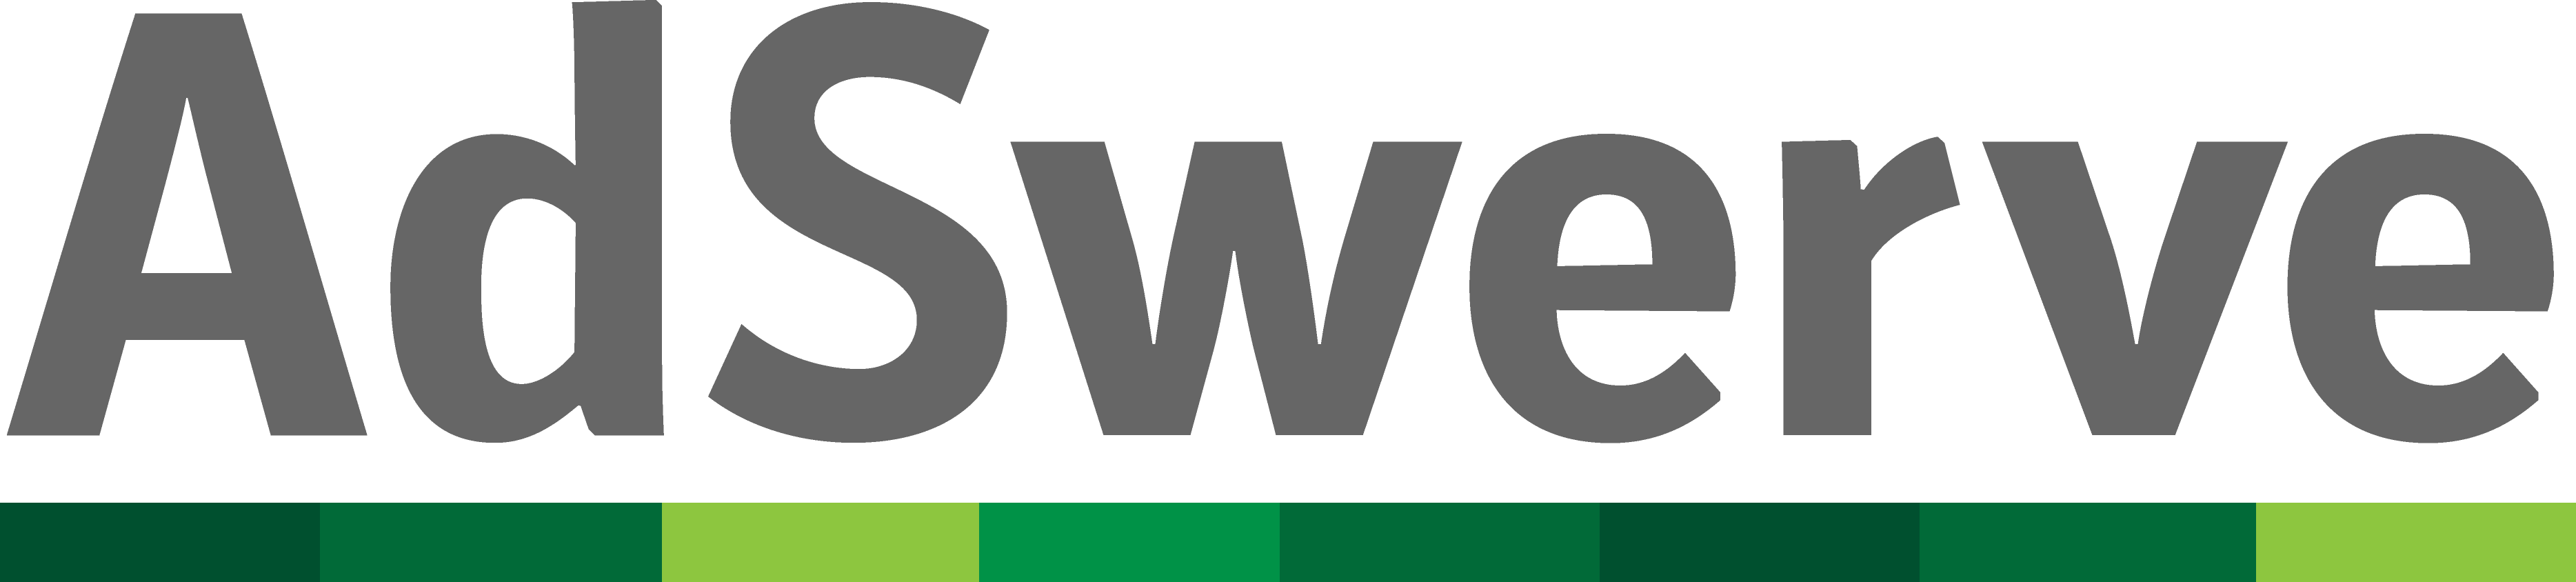 Adswerve logo